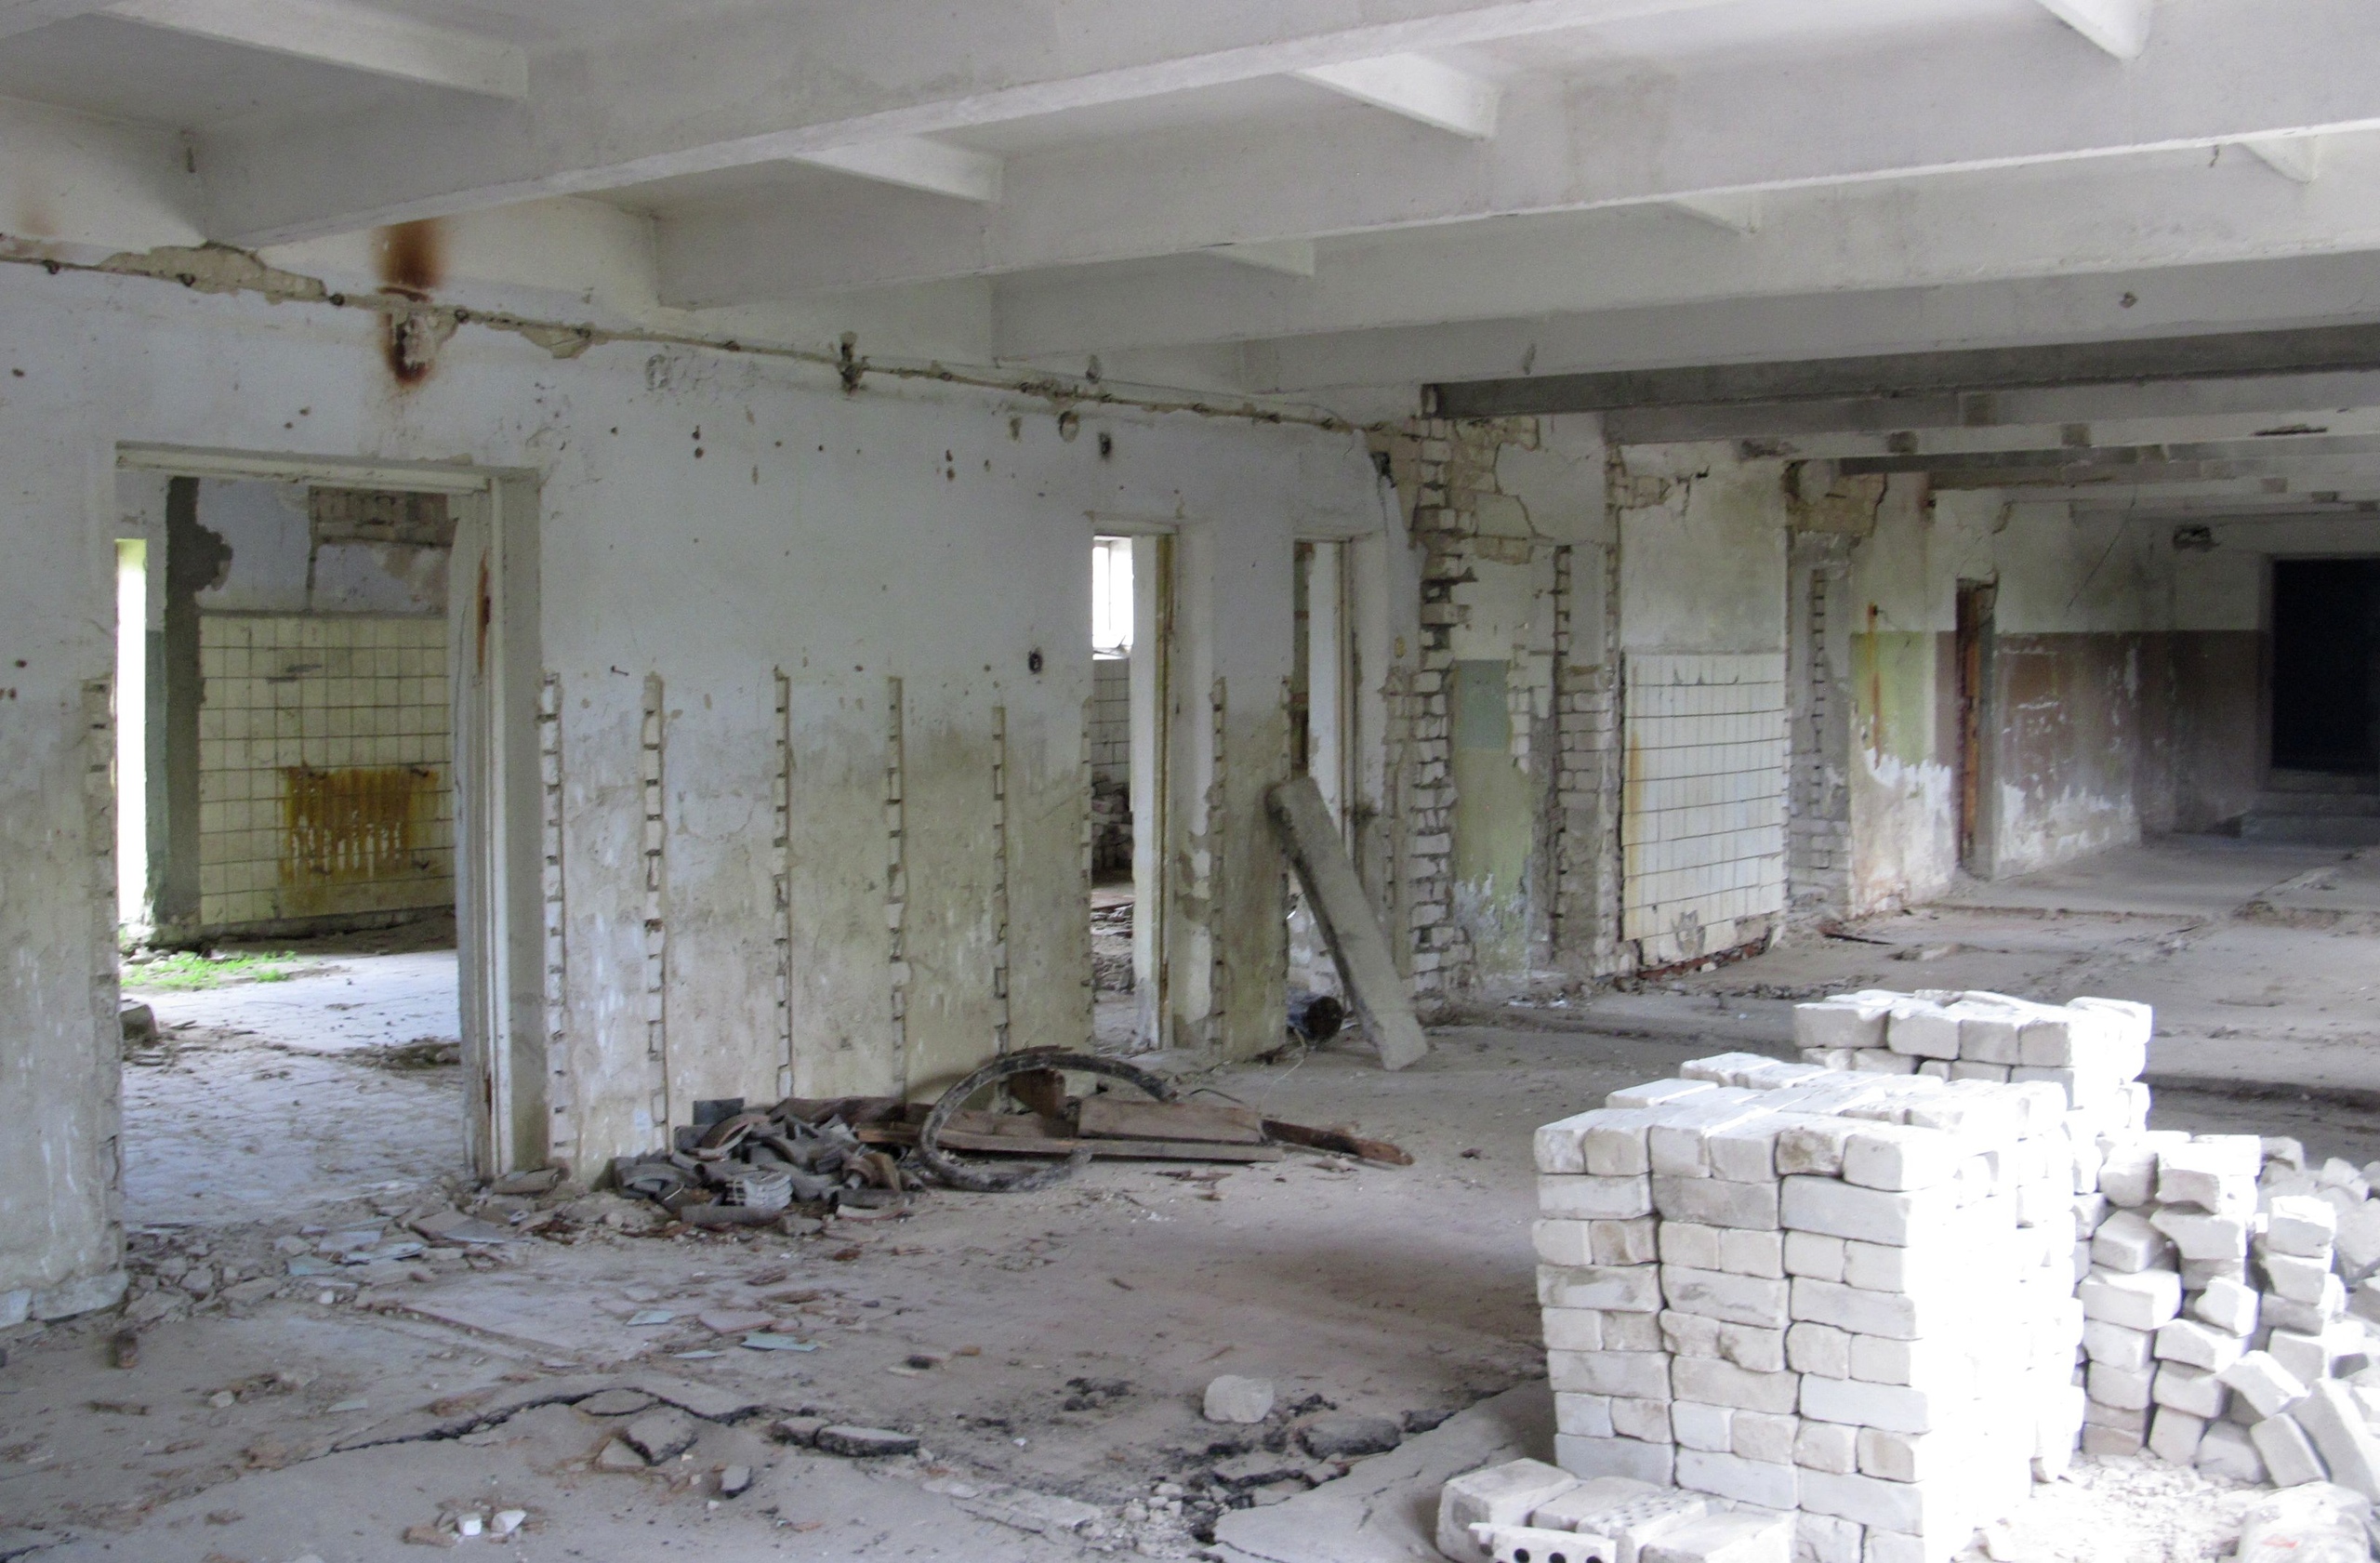 Фотограф Игорь Федотов побывал на заброшенной птицефабрике в Вязниках. Здания пустуют уже около 20 лет и медленно разрушаются